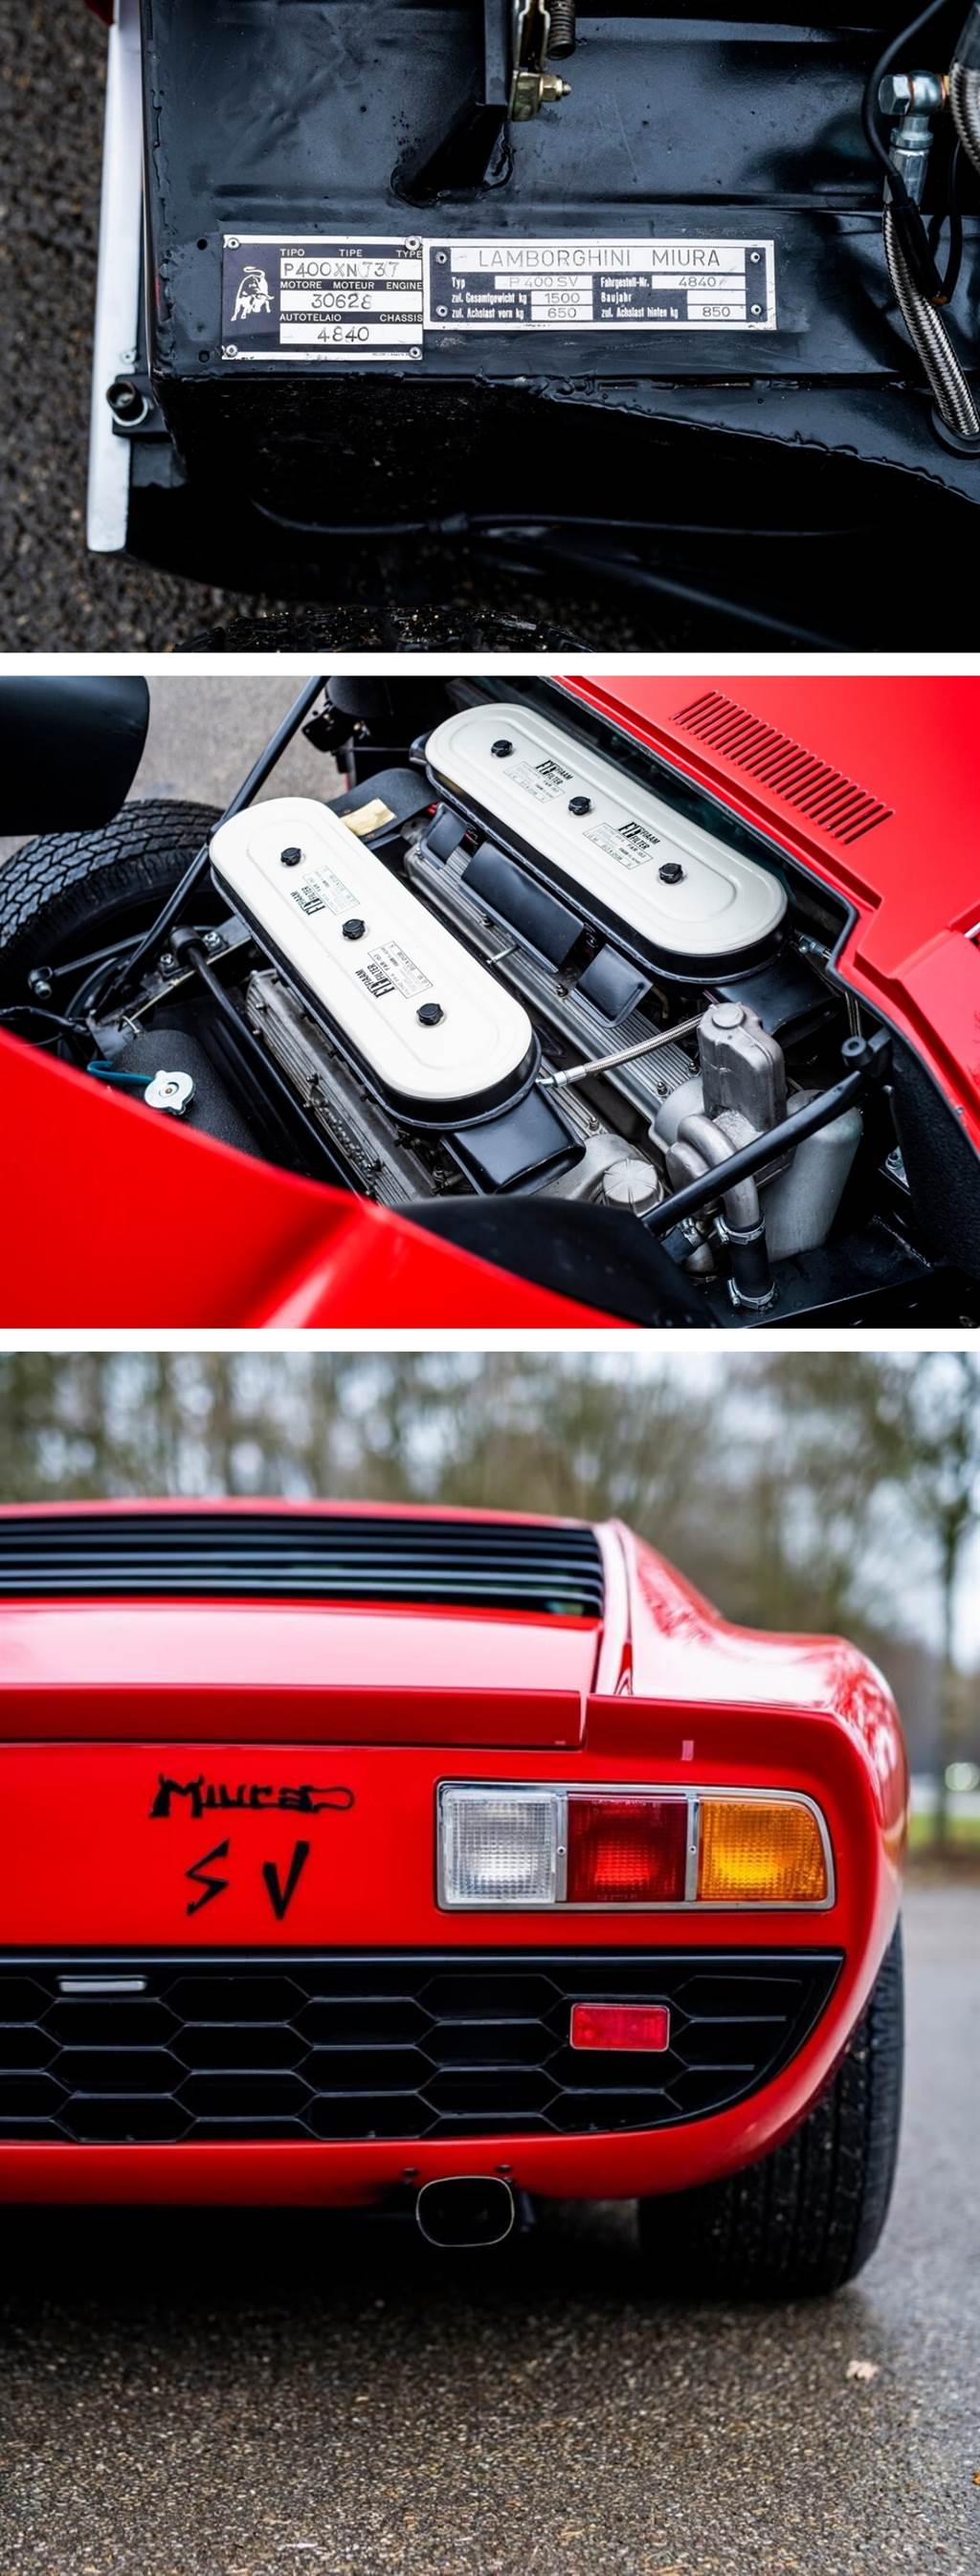 Lamborghini Miura SV在蘇富比巴黎拍賣會創下超過240萬歐元「第二高」紀錄
